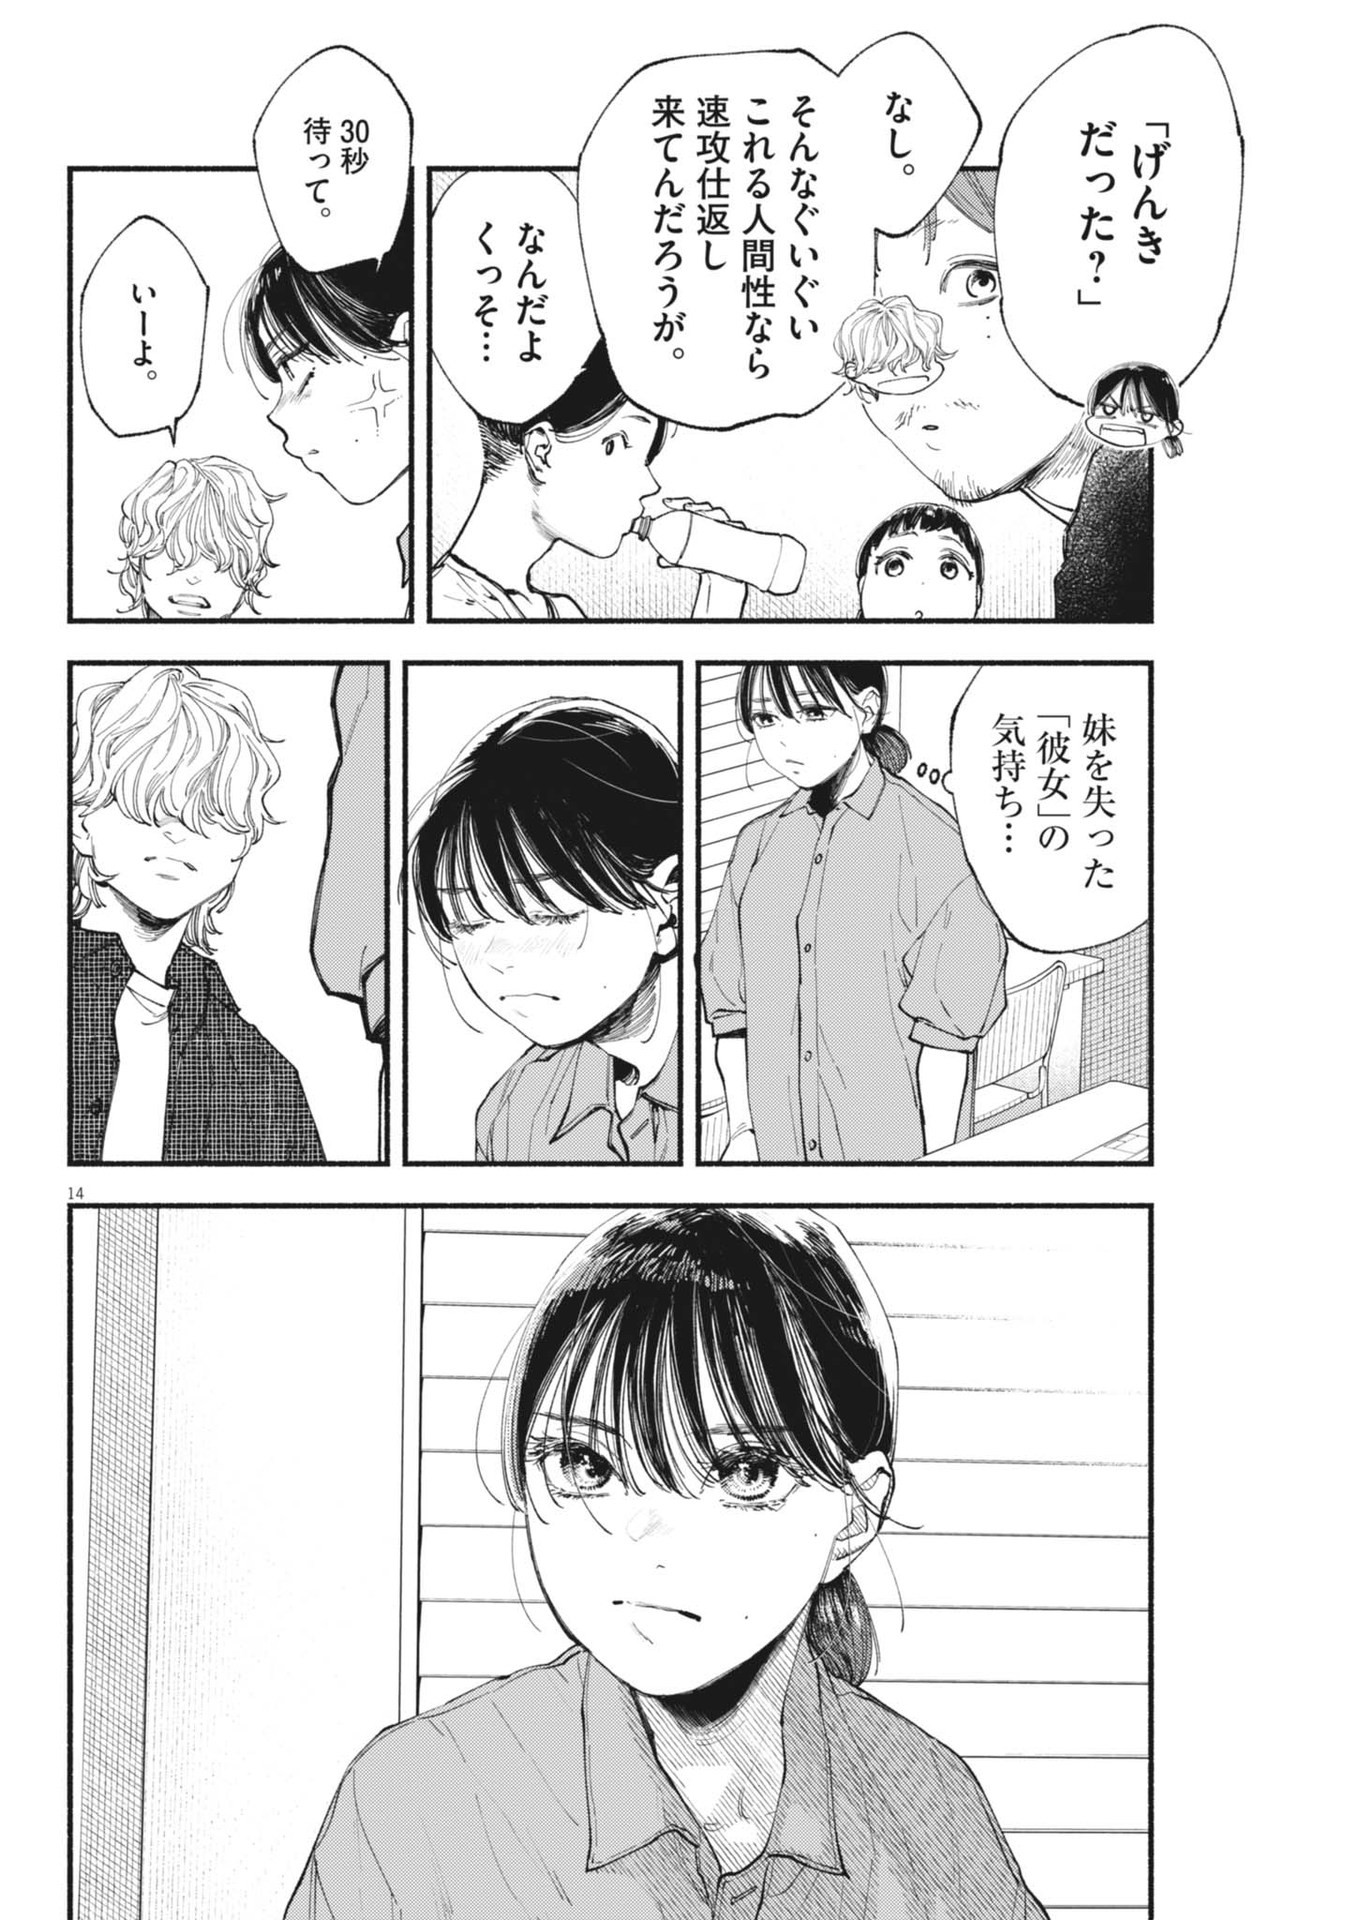 Konoyo wa Tatakau Kachi ga Aru  - Chapter 28 - Page 14